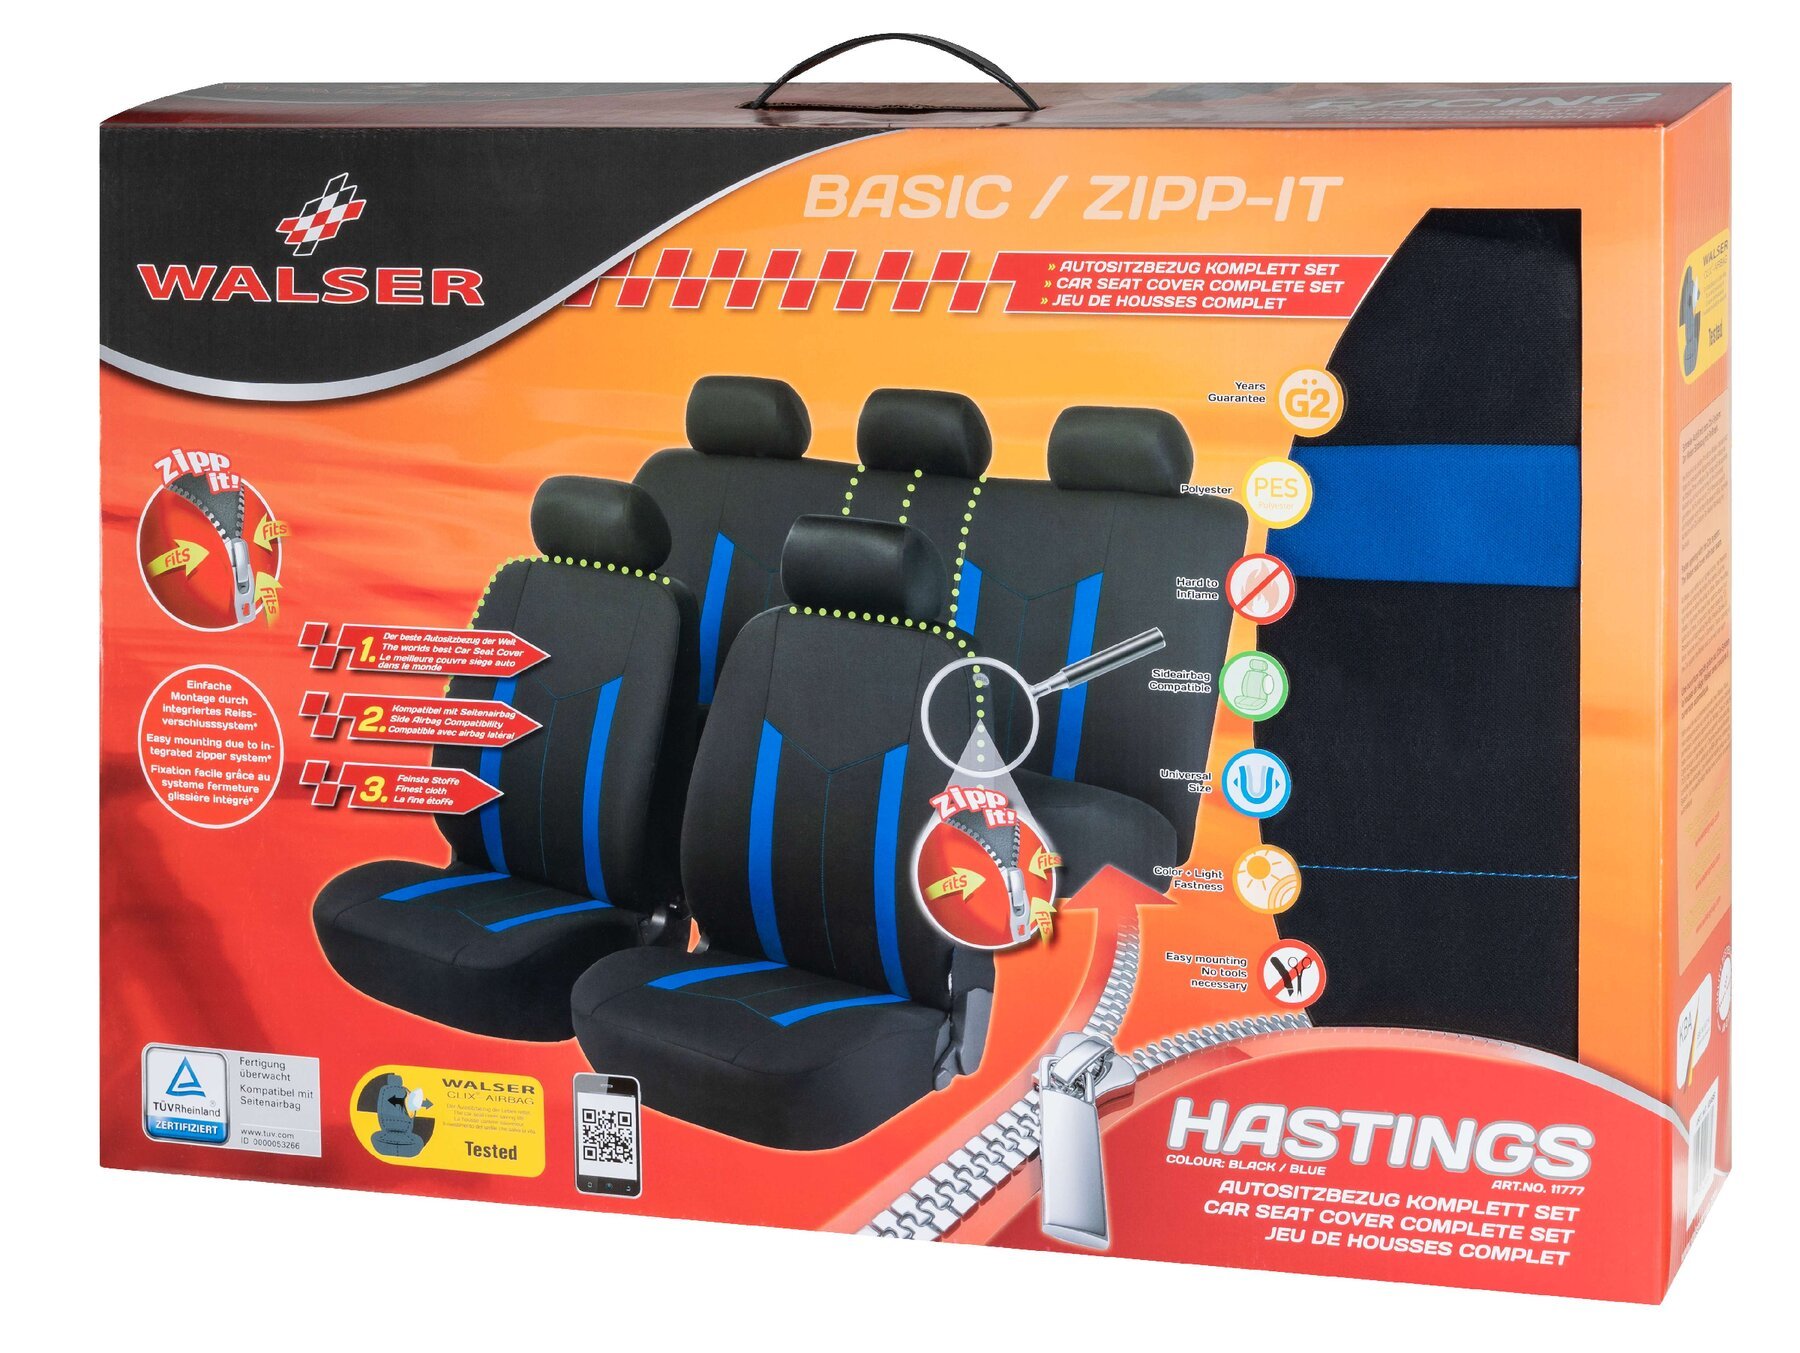 Auto stoelbeschermer Hastings met Zipper ZIPP-IT Autostoelhoes, set, 2 stoelbeschermer voor voorstoel, 1 stoelbeschermer voor achterbank zwart/blauw